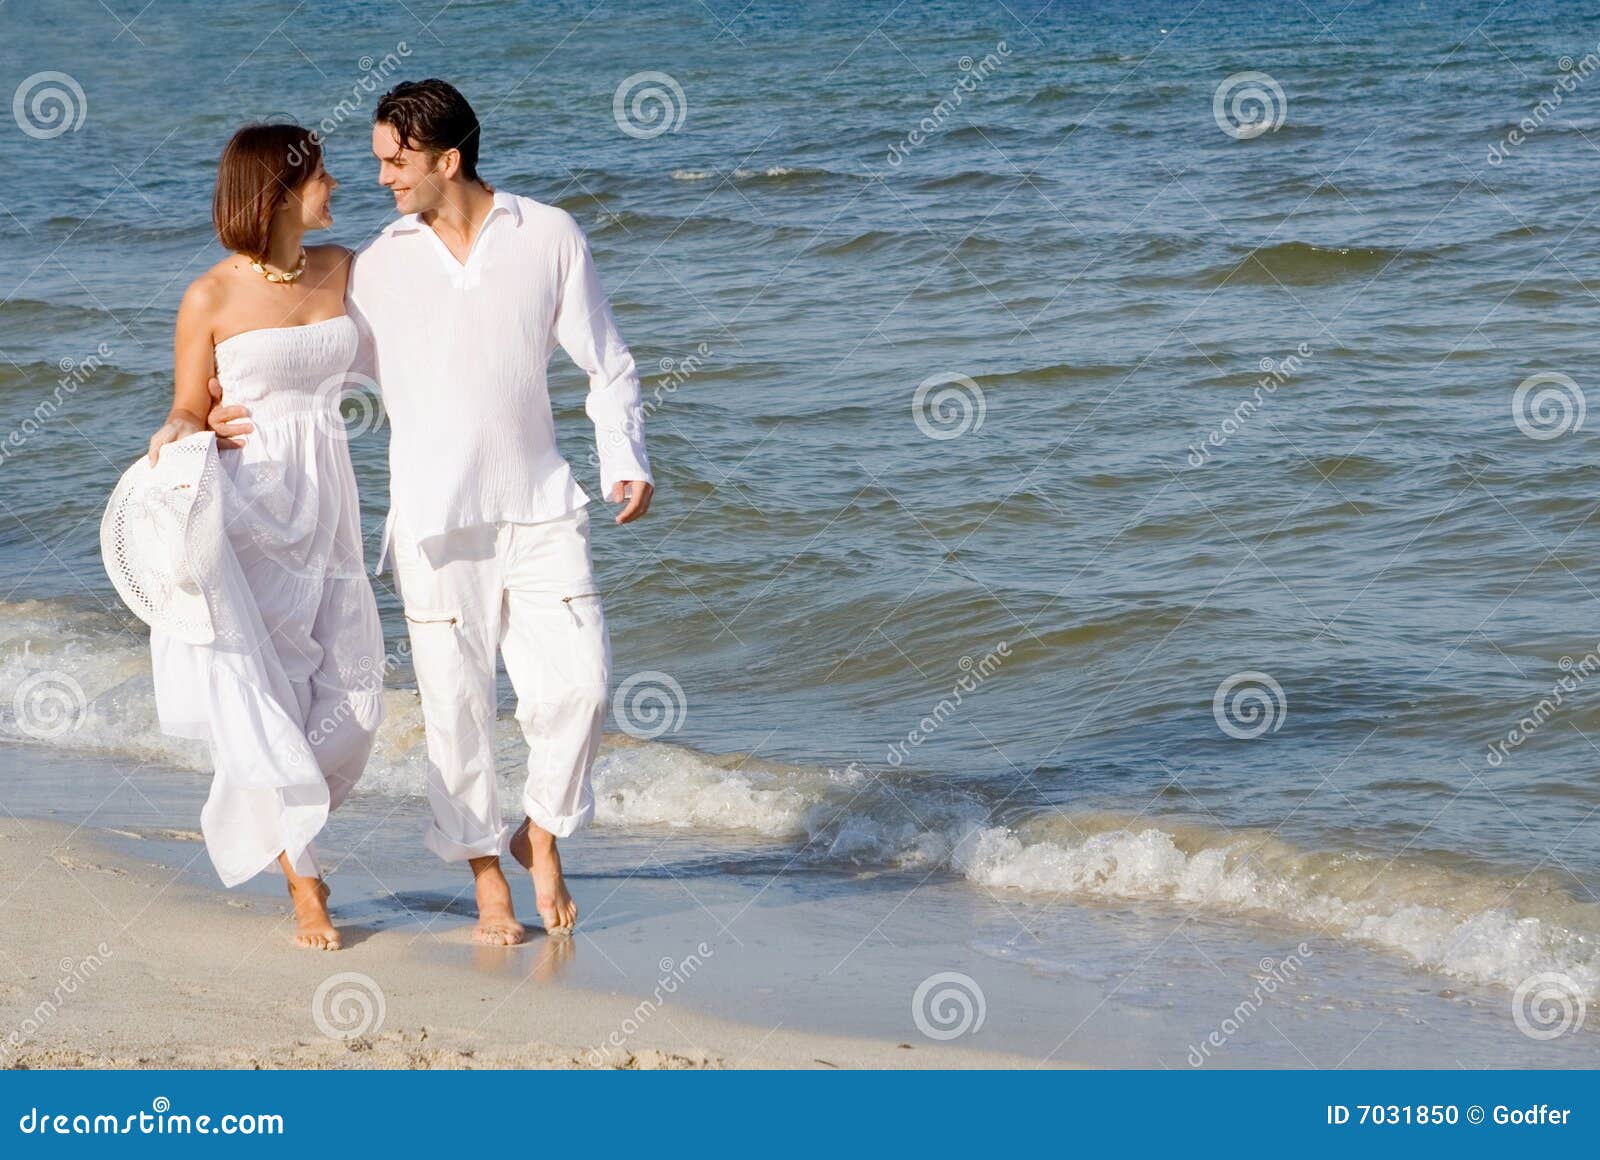 图片素材 : 人, 海滩, 海洋, 日落, 爱, 假日, 浪漫, 新娘, 仪式, 照片, 心情, 大加那利岛, 情感, maspalomas ...